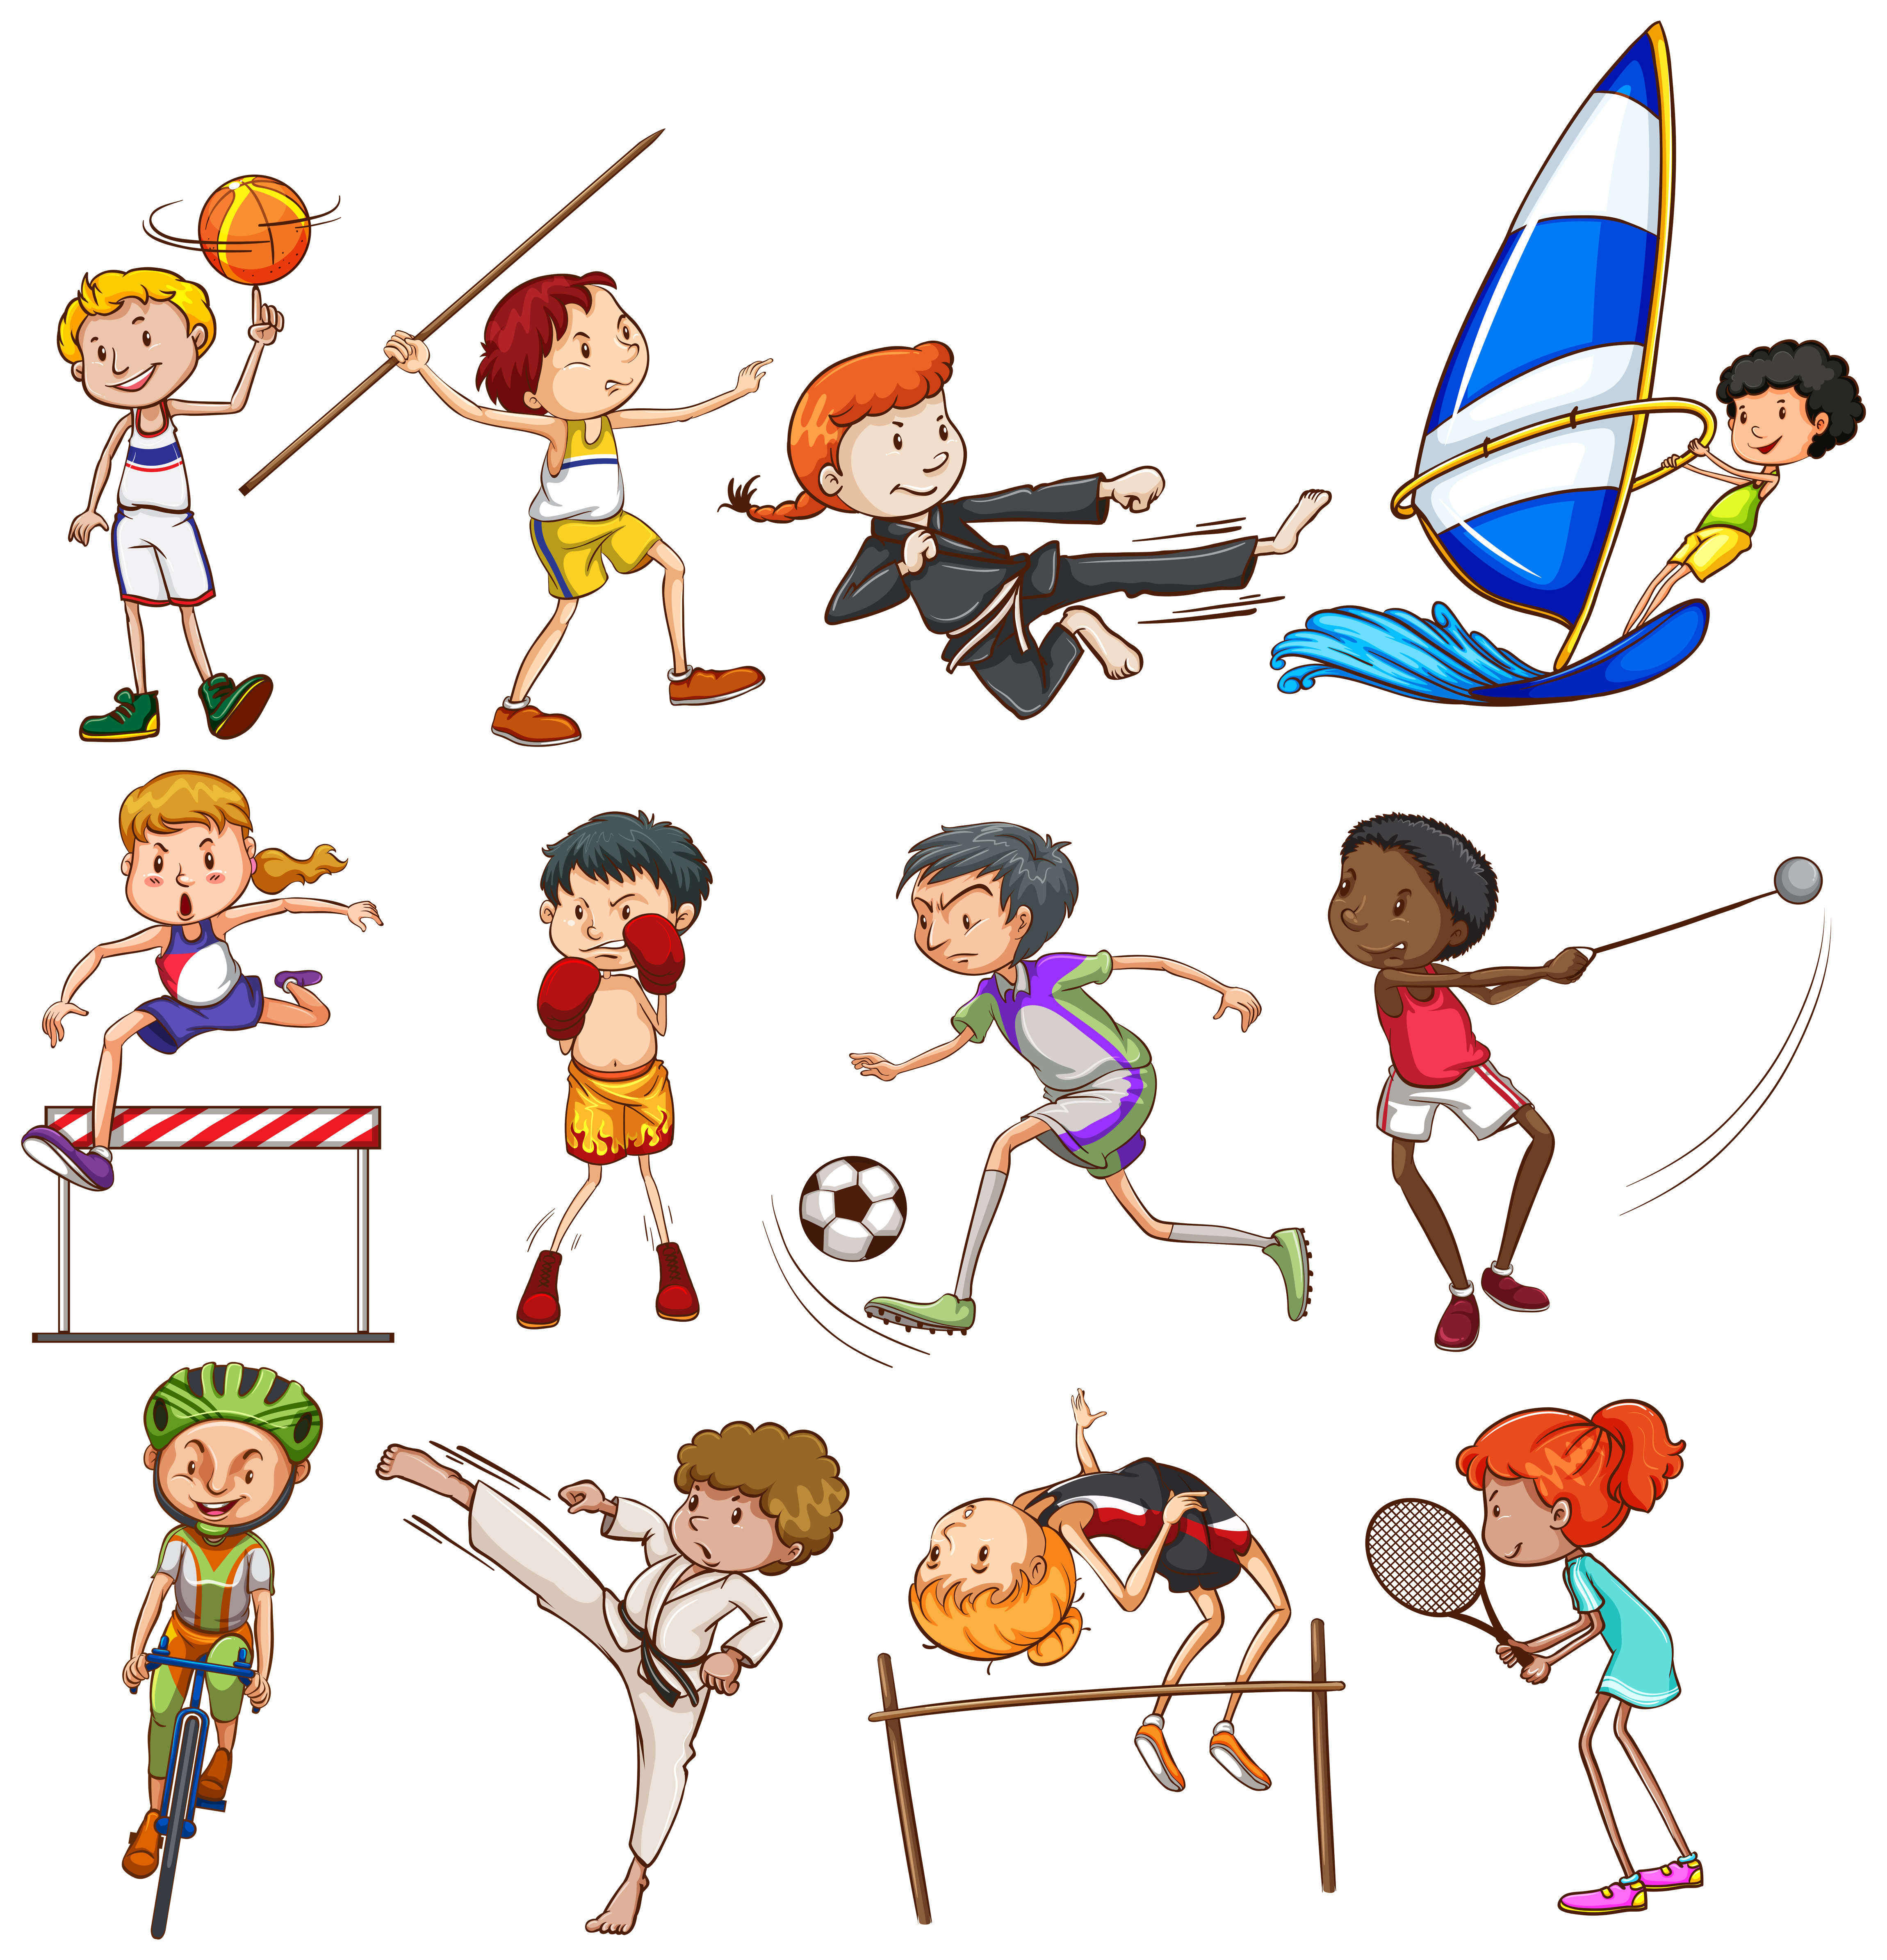 Different kinds of sport. Разные виды спорта рисунки. Изображения видов спорта для детей. Иллюстрации с разными видами спорта. Иллюстрации виды спорта для детей.